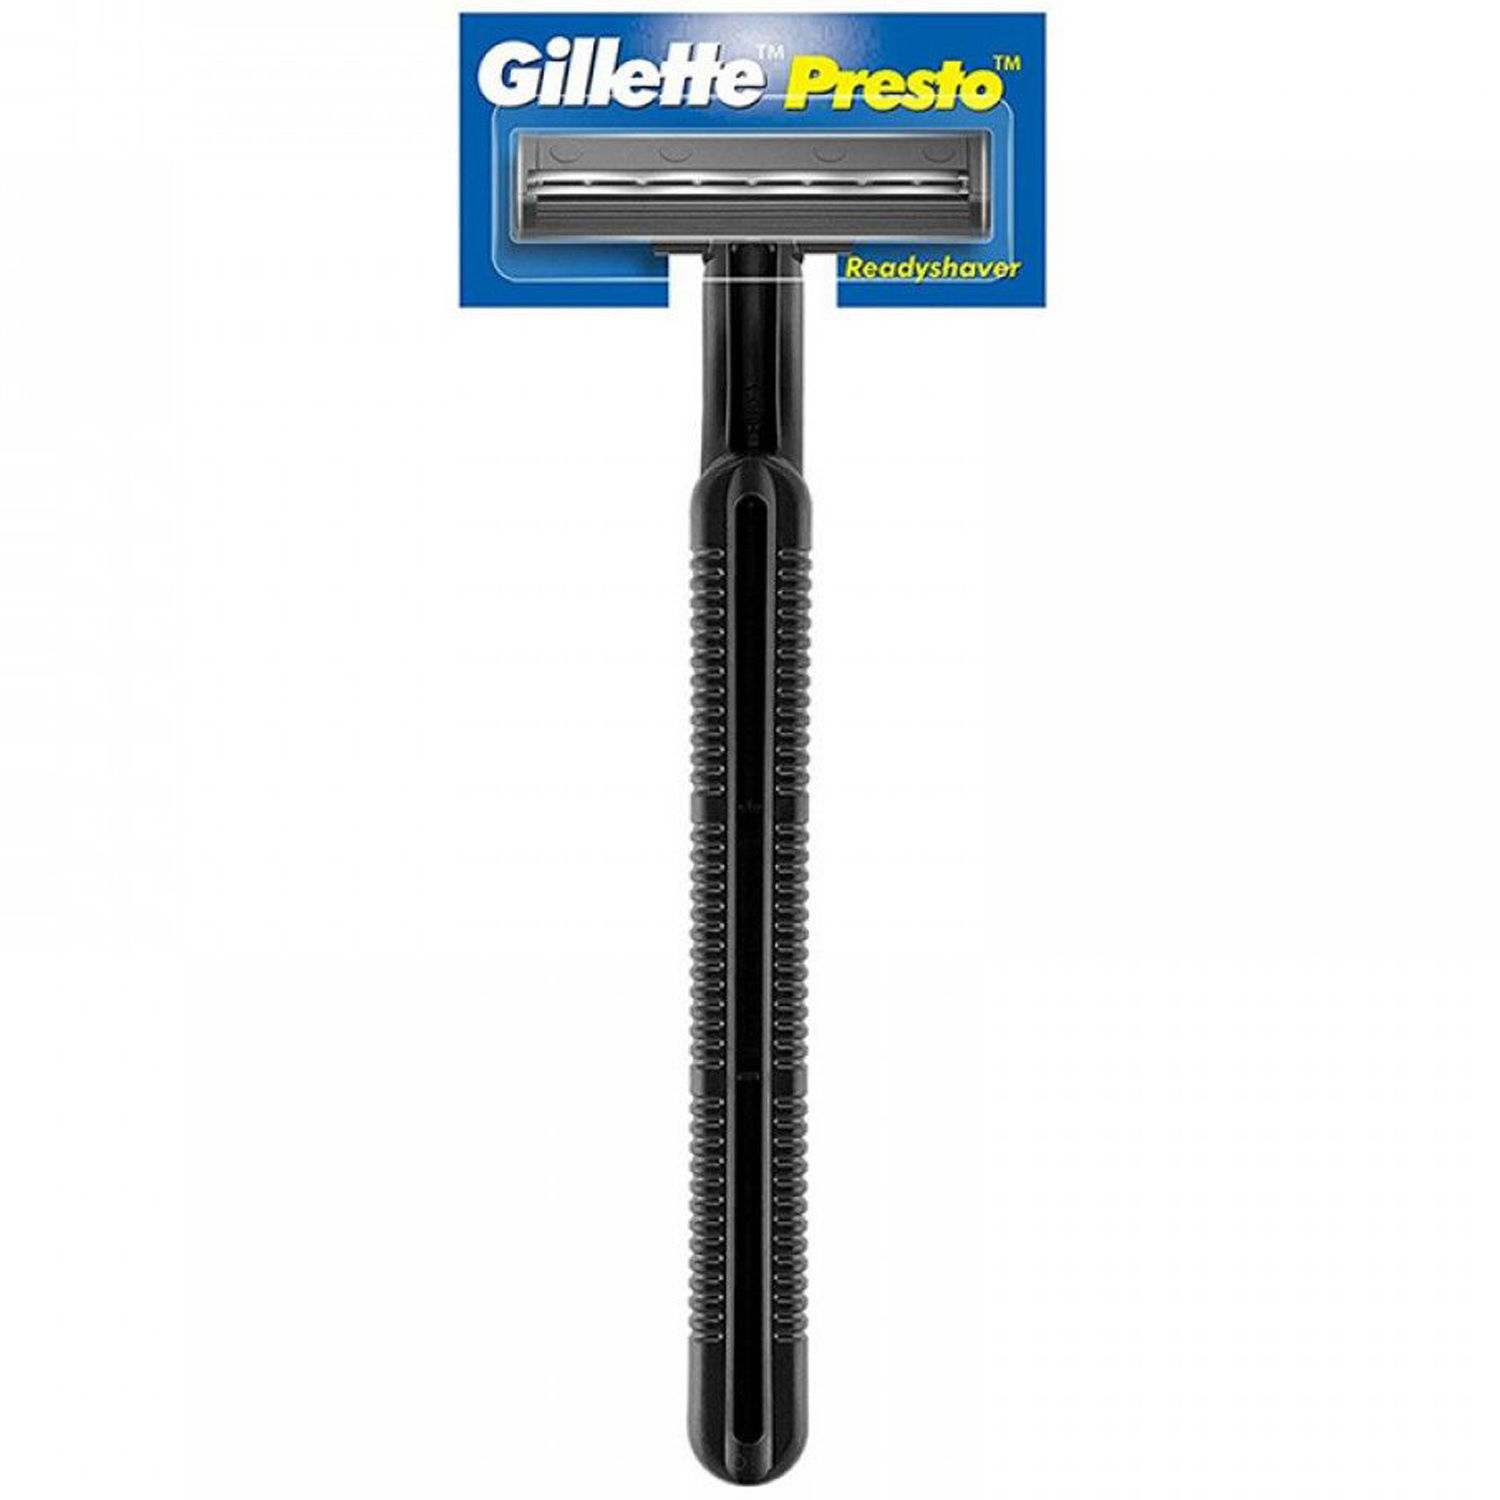 Gillette Presto Razor, 1 Count, Pack of 1 